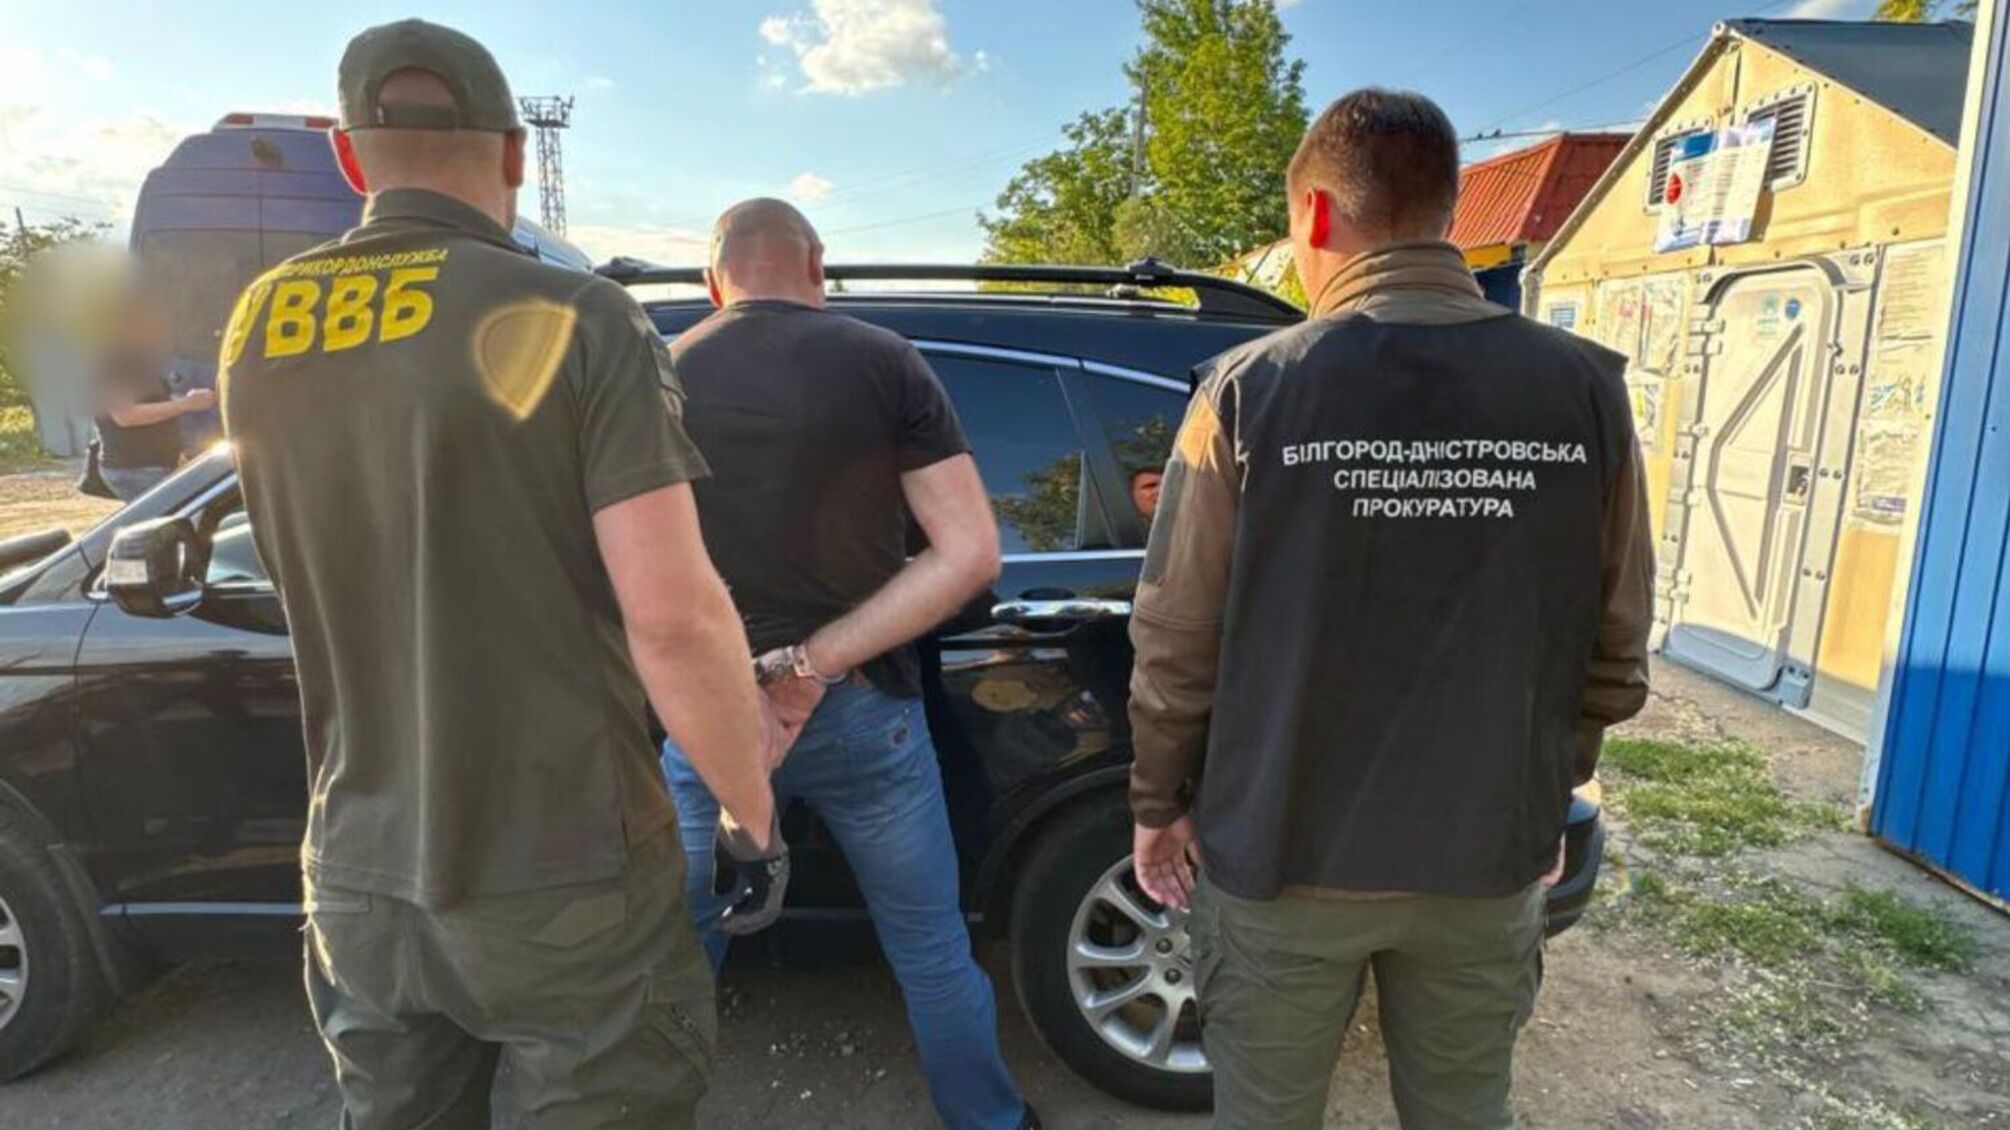 Пограничники вблизи Молдовы задержали одессита за незаконную переправу гражданина Украины через границу